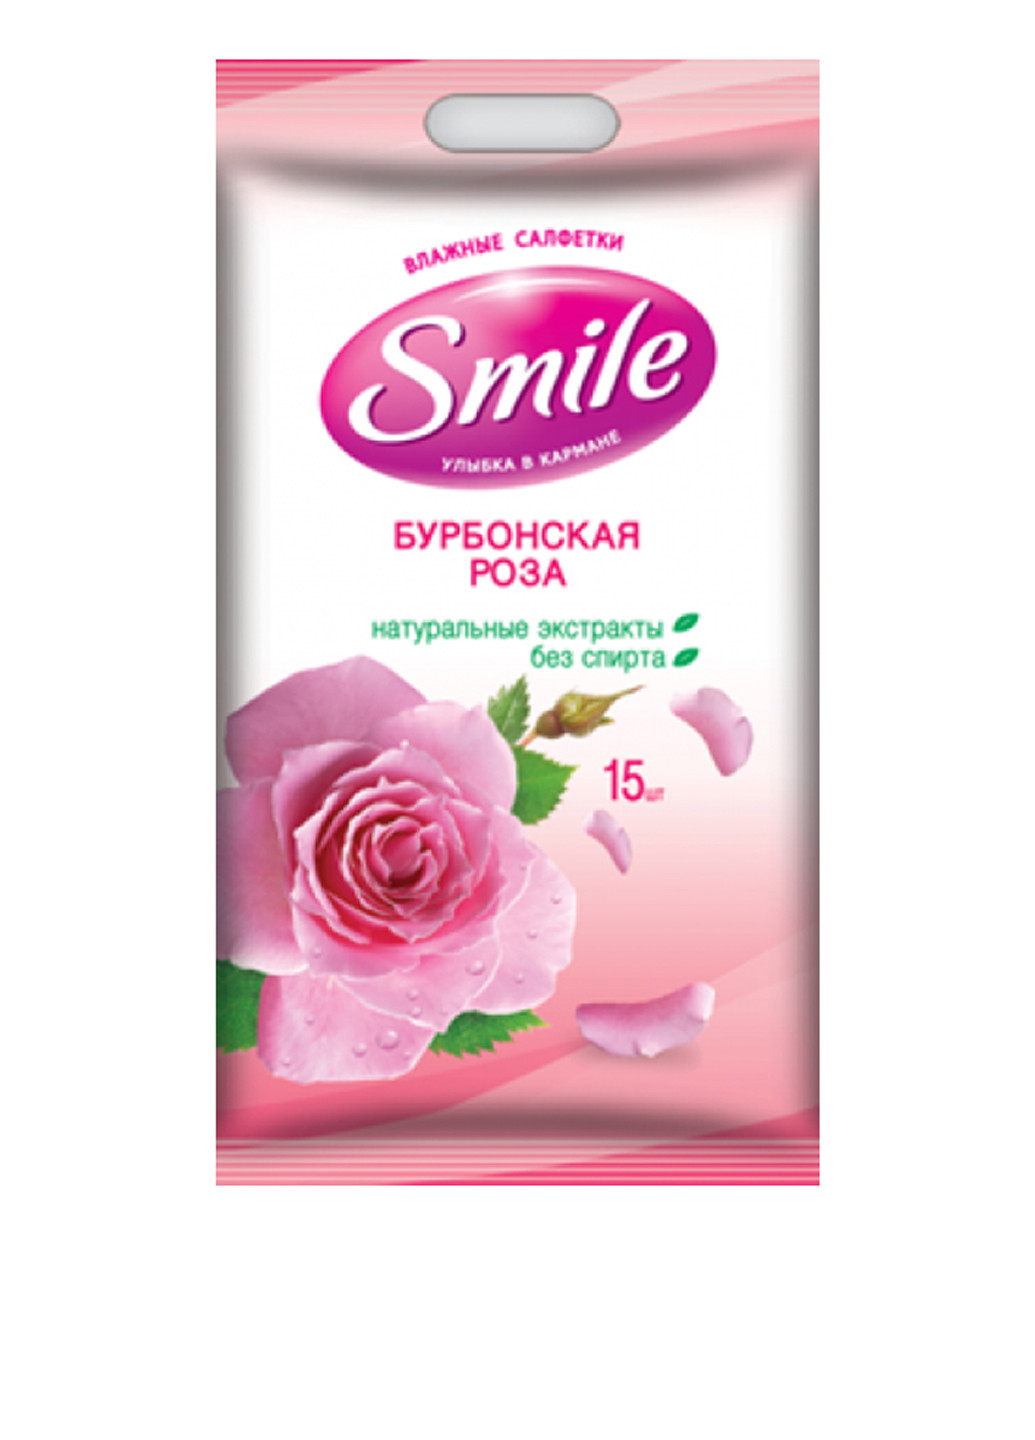 Влажные салфетки Бурбонская роза (15 шт.) Smile (79584910)